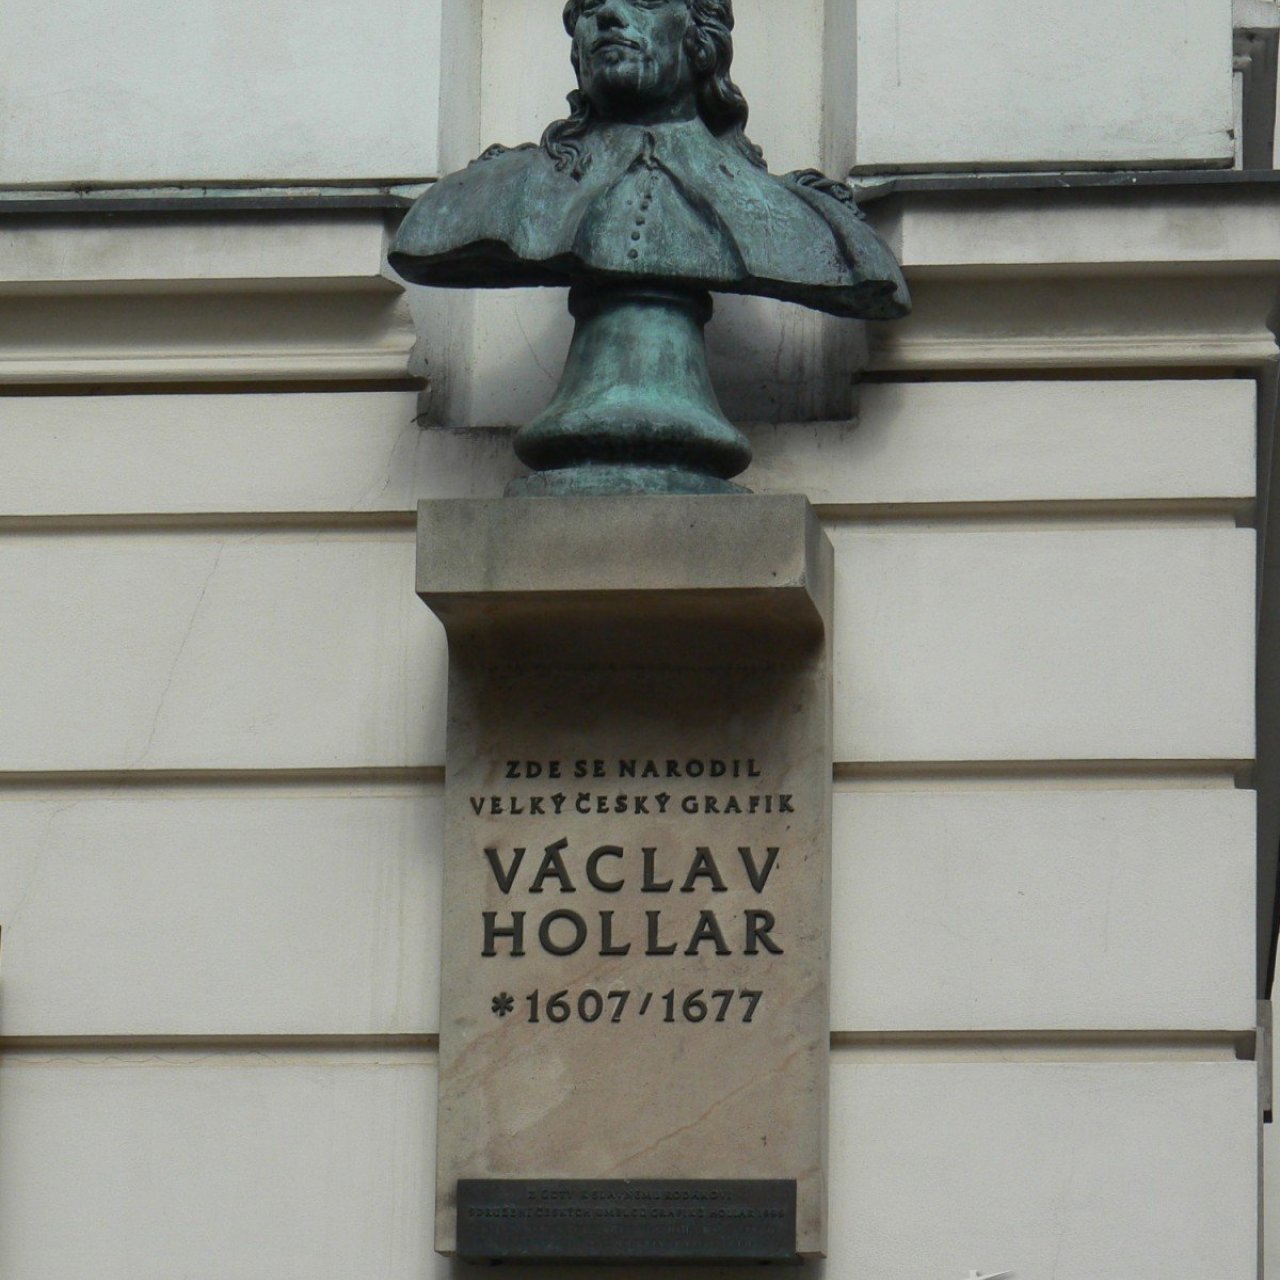 Praha 1 - Soukenická - busta a pamětní deska Václav Hollar